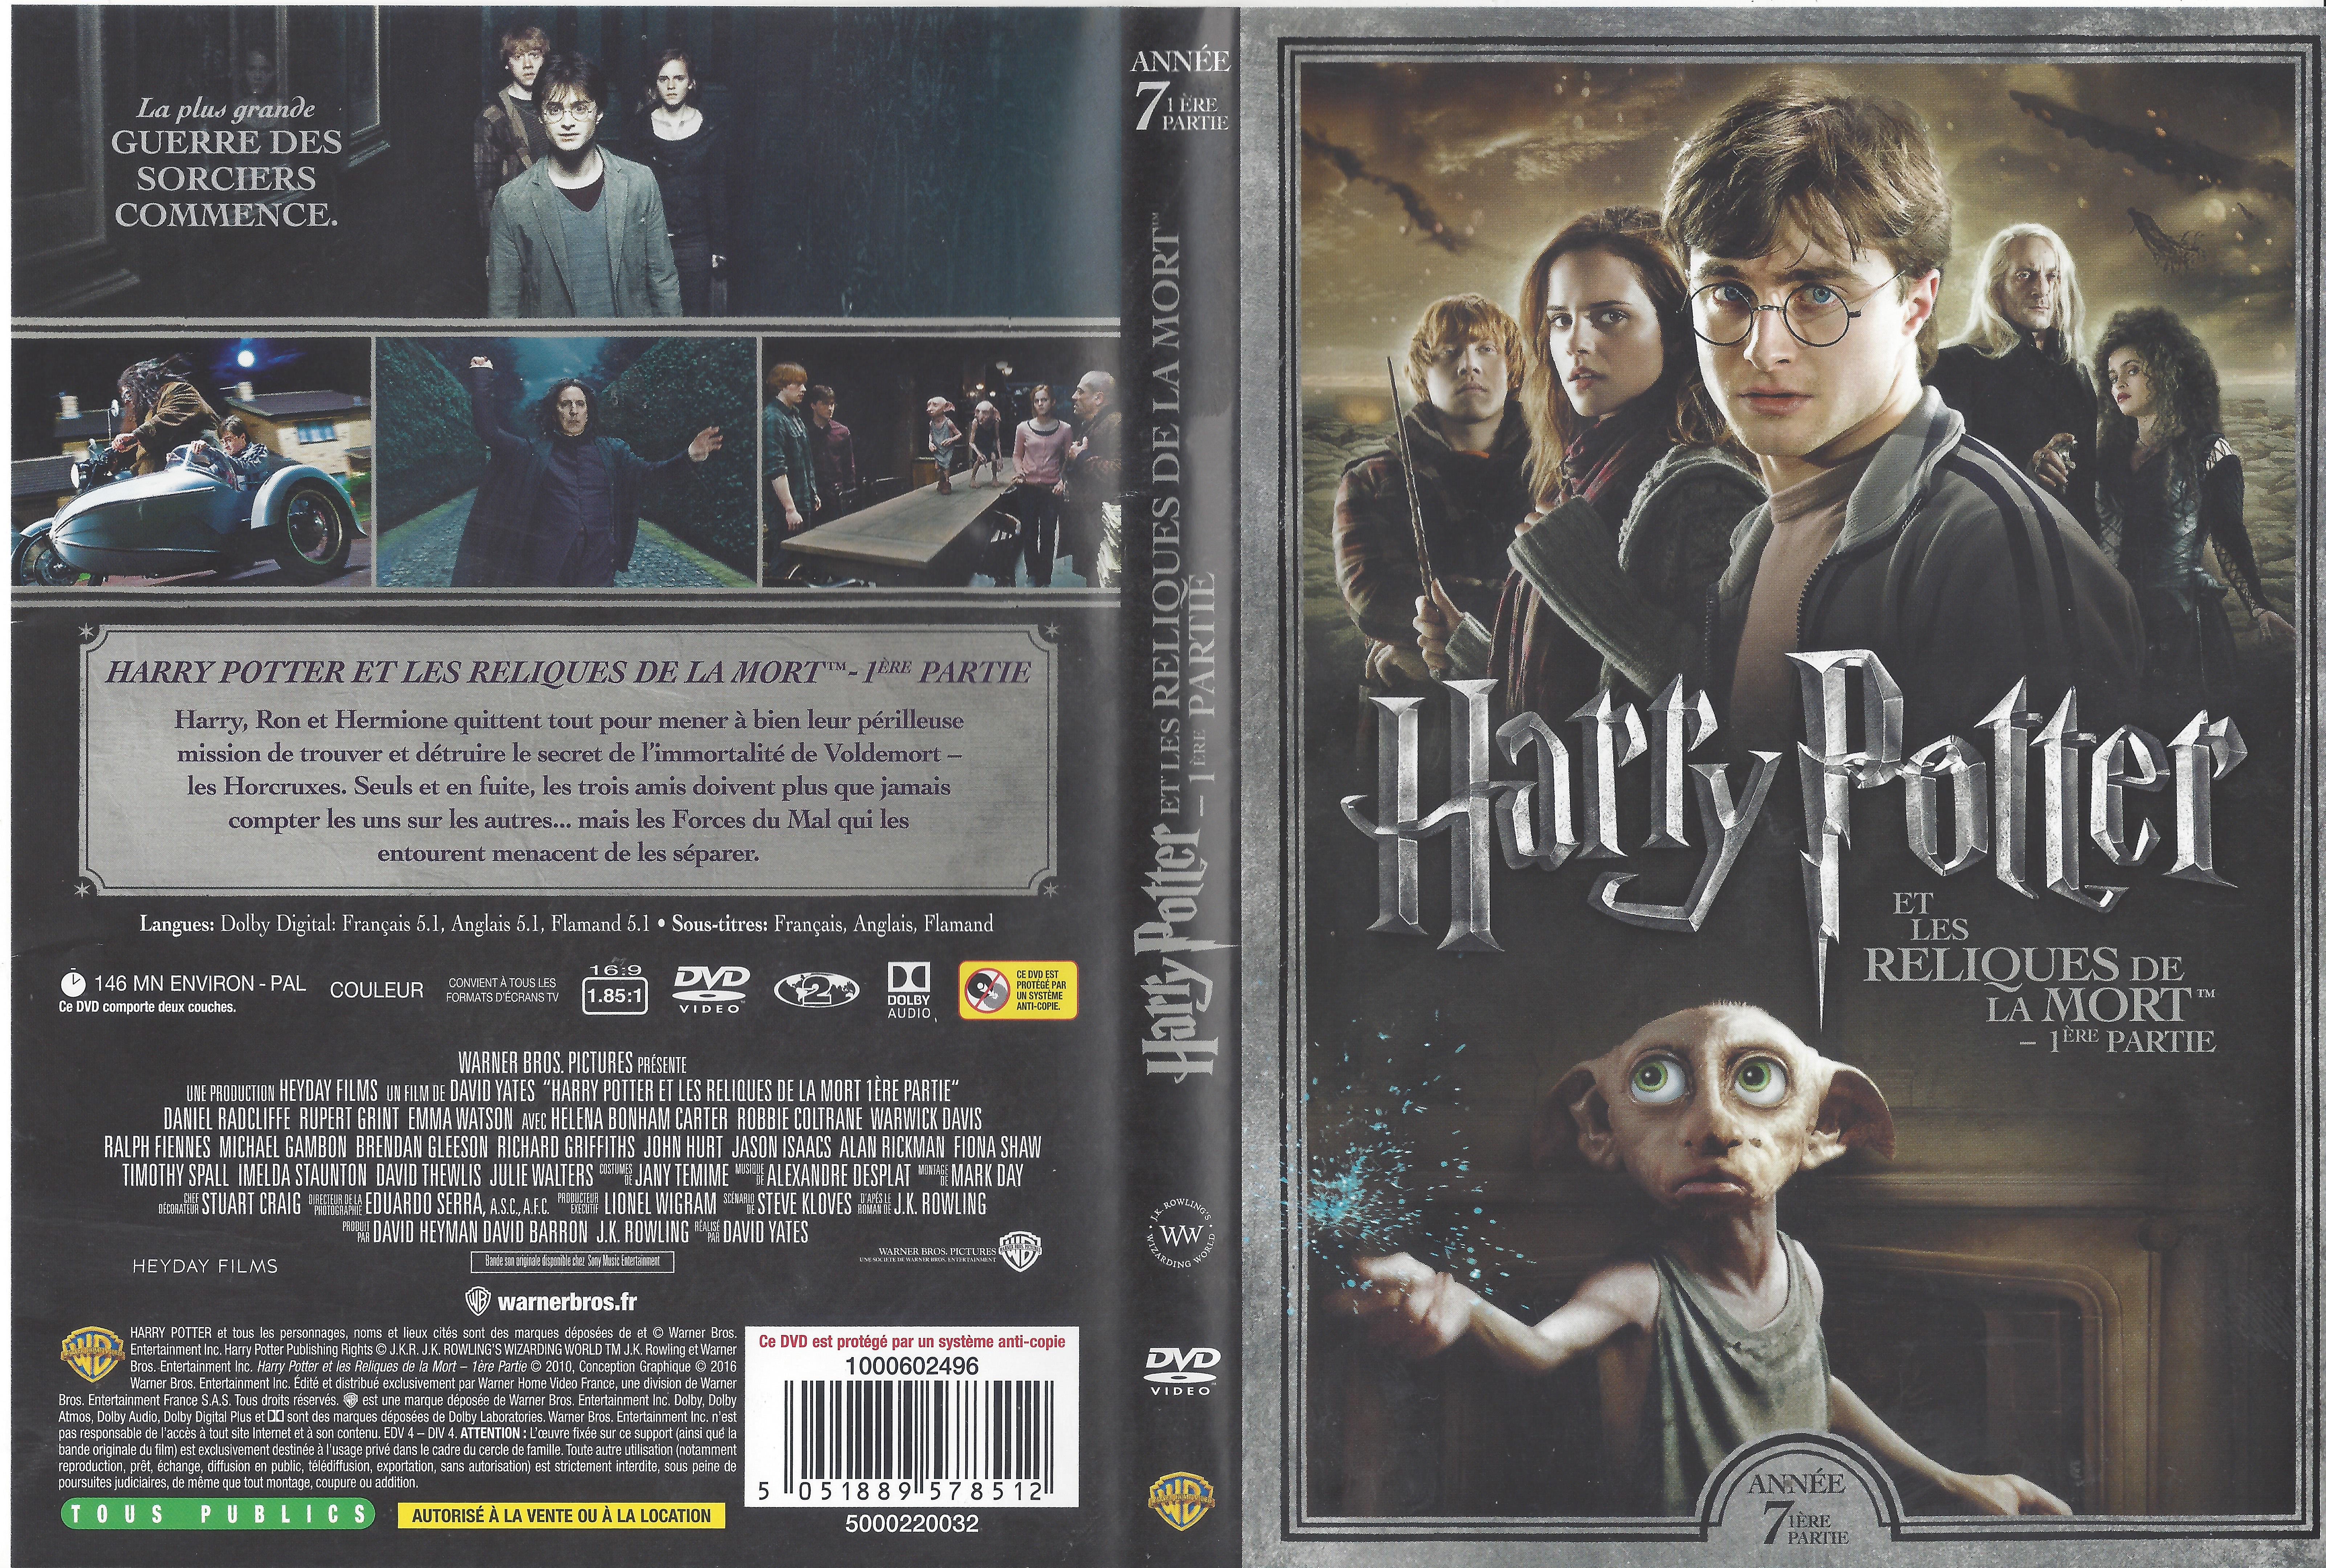 Jaquette DVD Harry Potter et les reliques de la mort - 1re partie v4